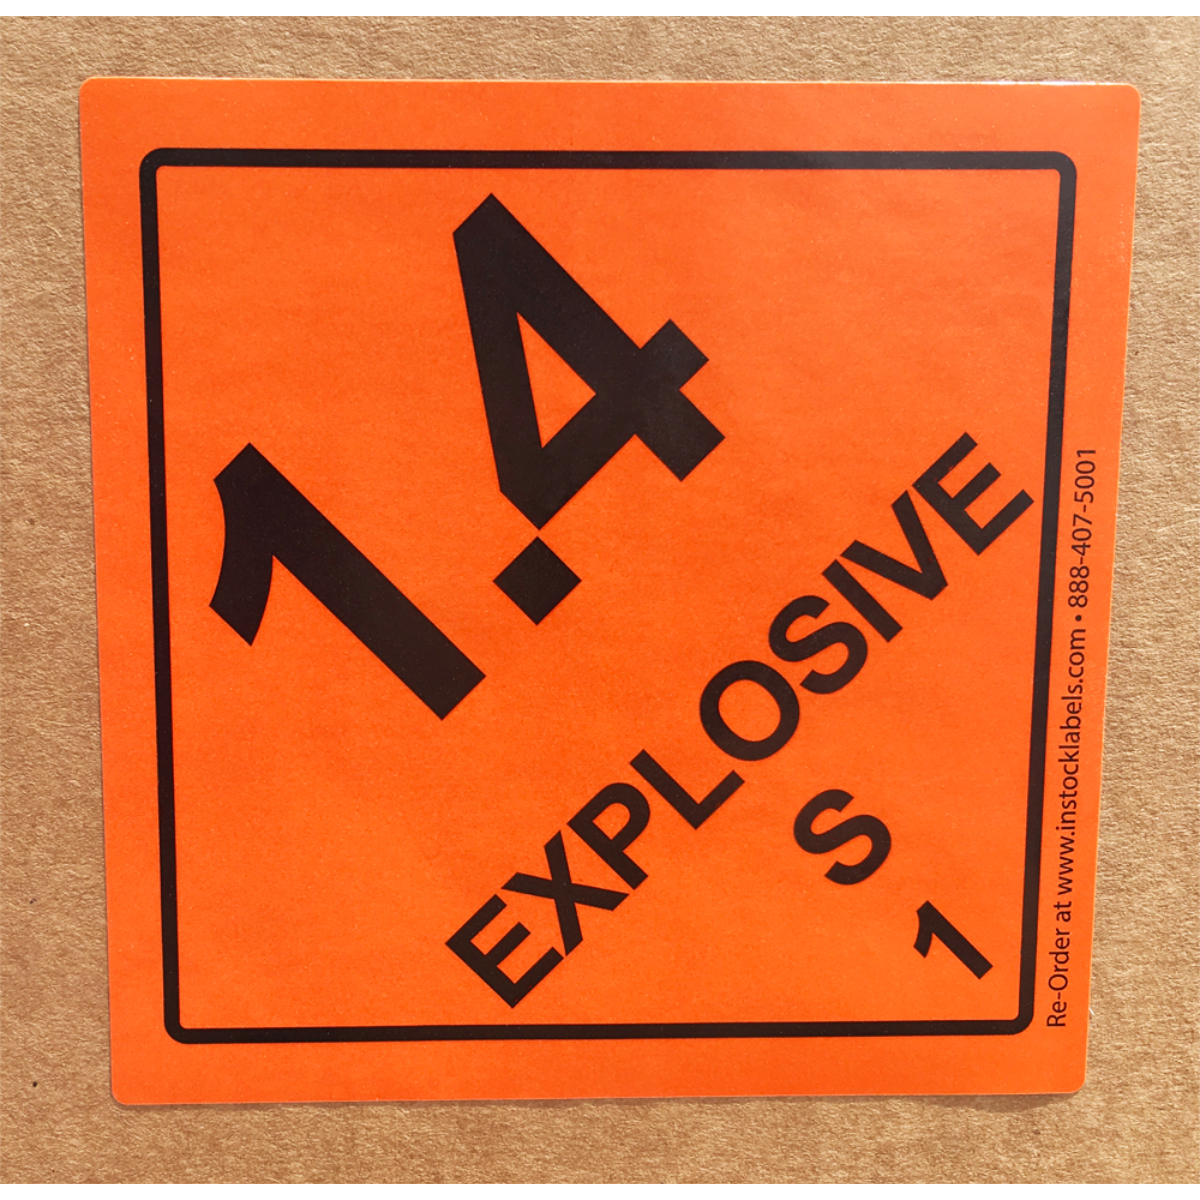 Explosive Class 1.4 S Hazmat DOT Labels